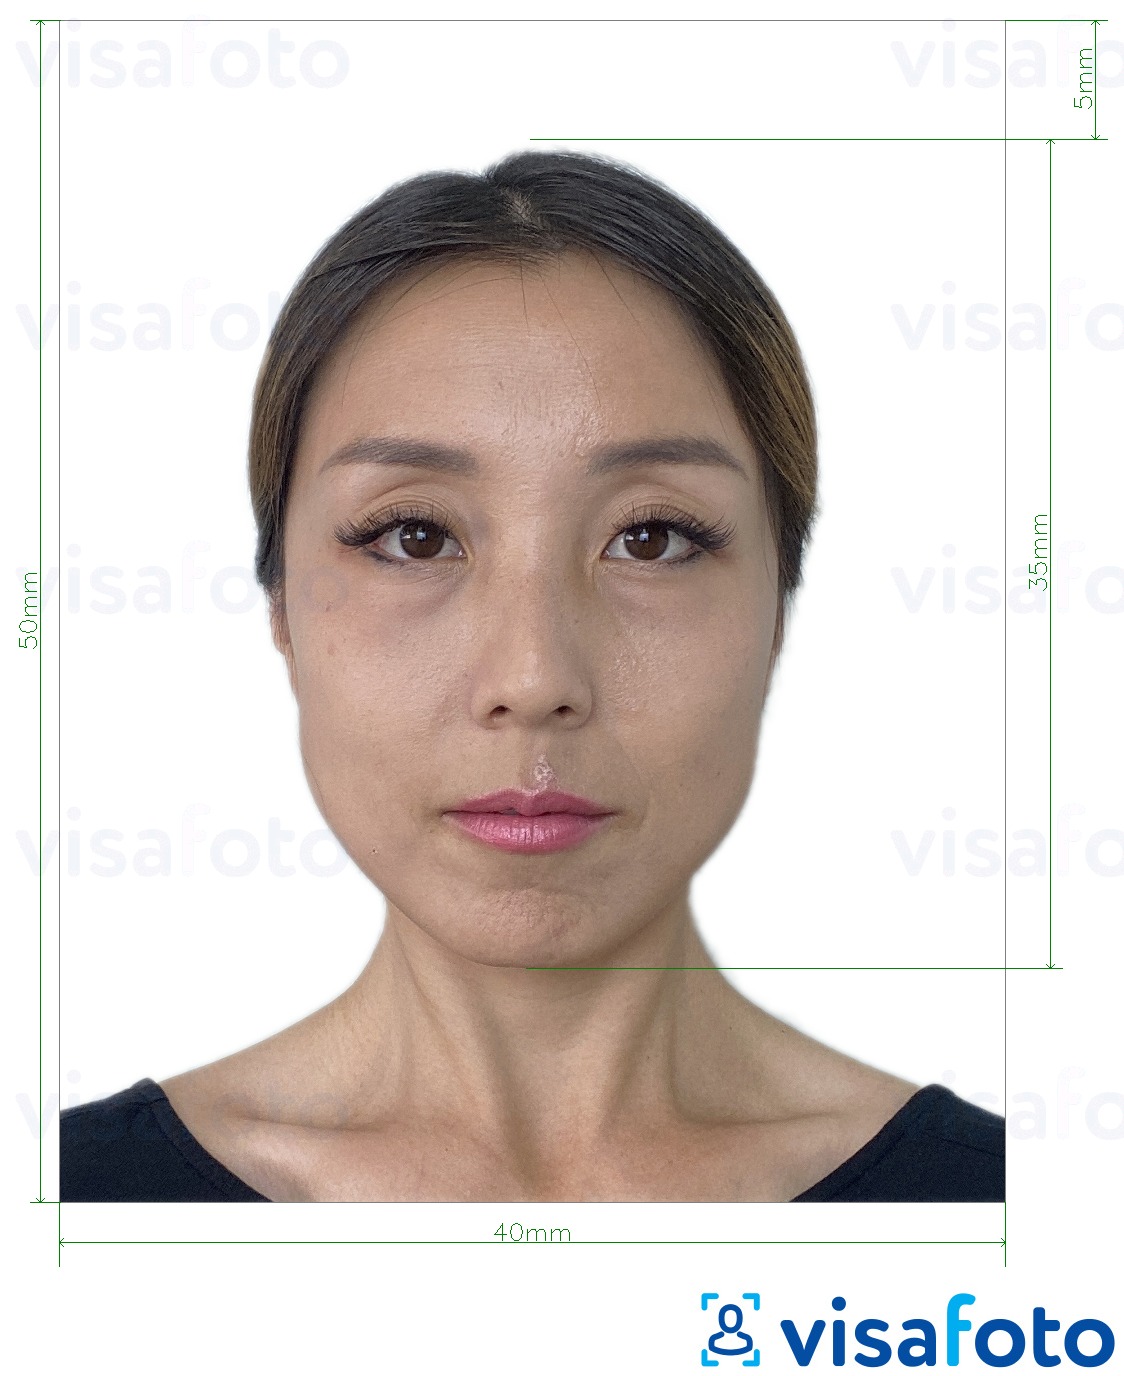 так көлөмү көрсөтүү менен Гонг-Конг паспорт 40x50 мм (4x5 см) сүрөтү үлгүсү